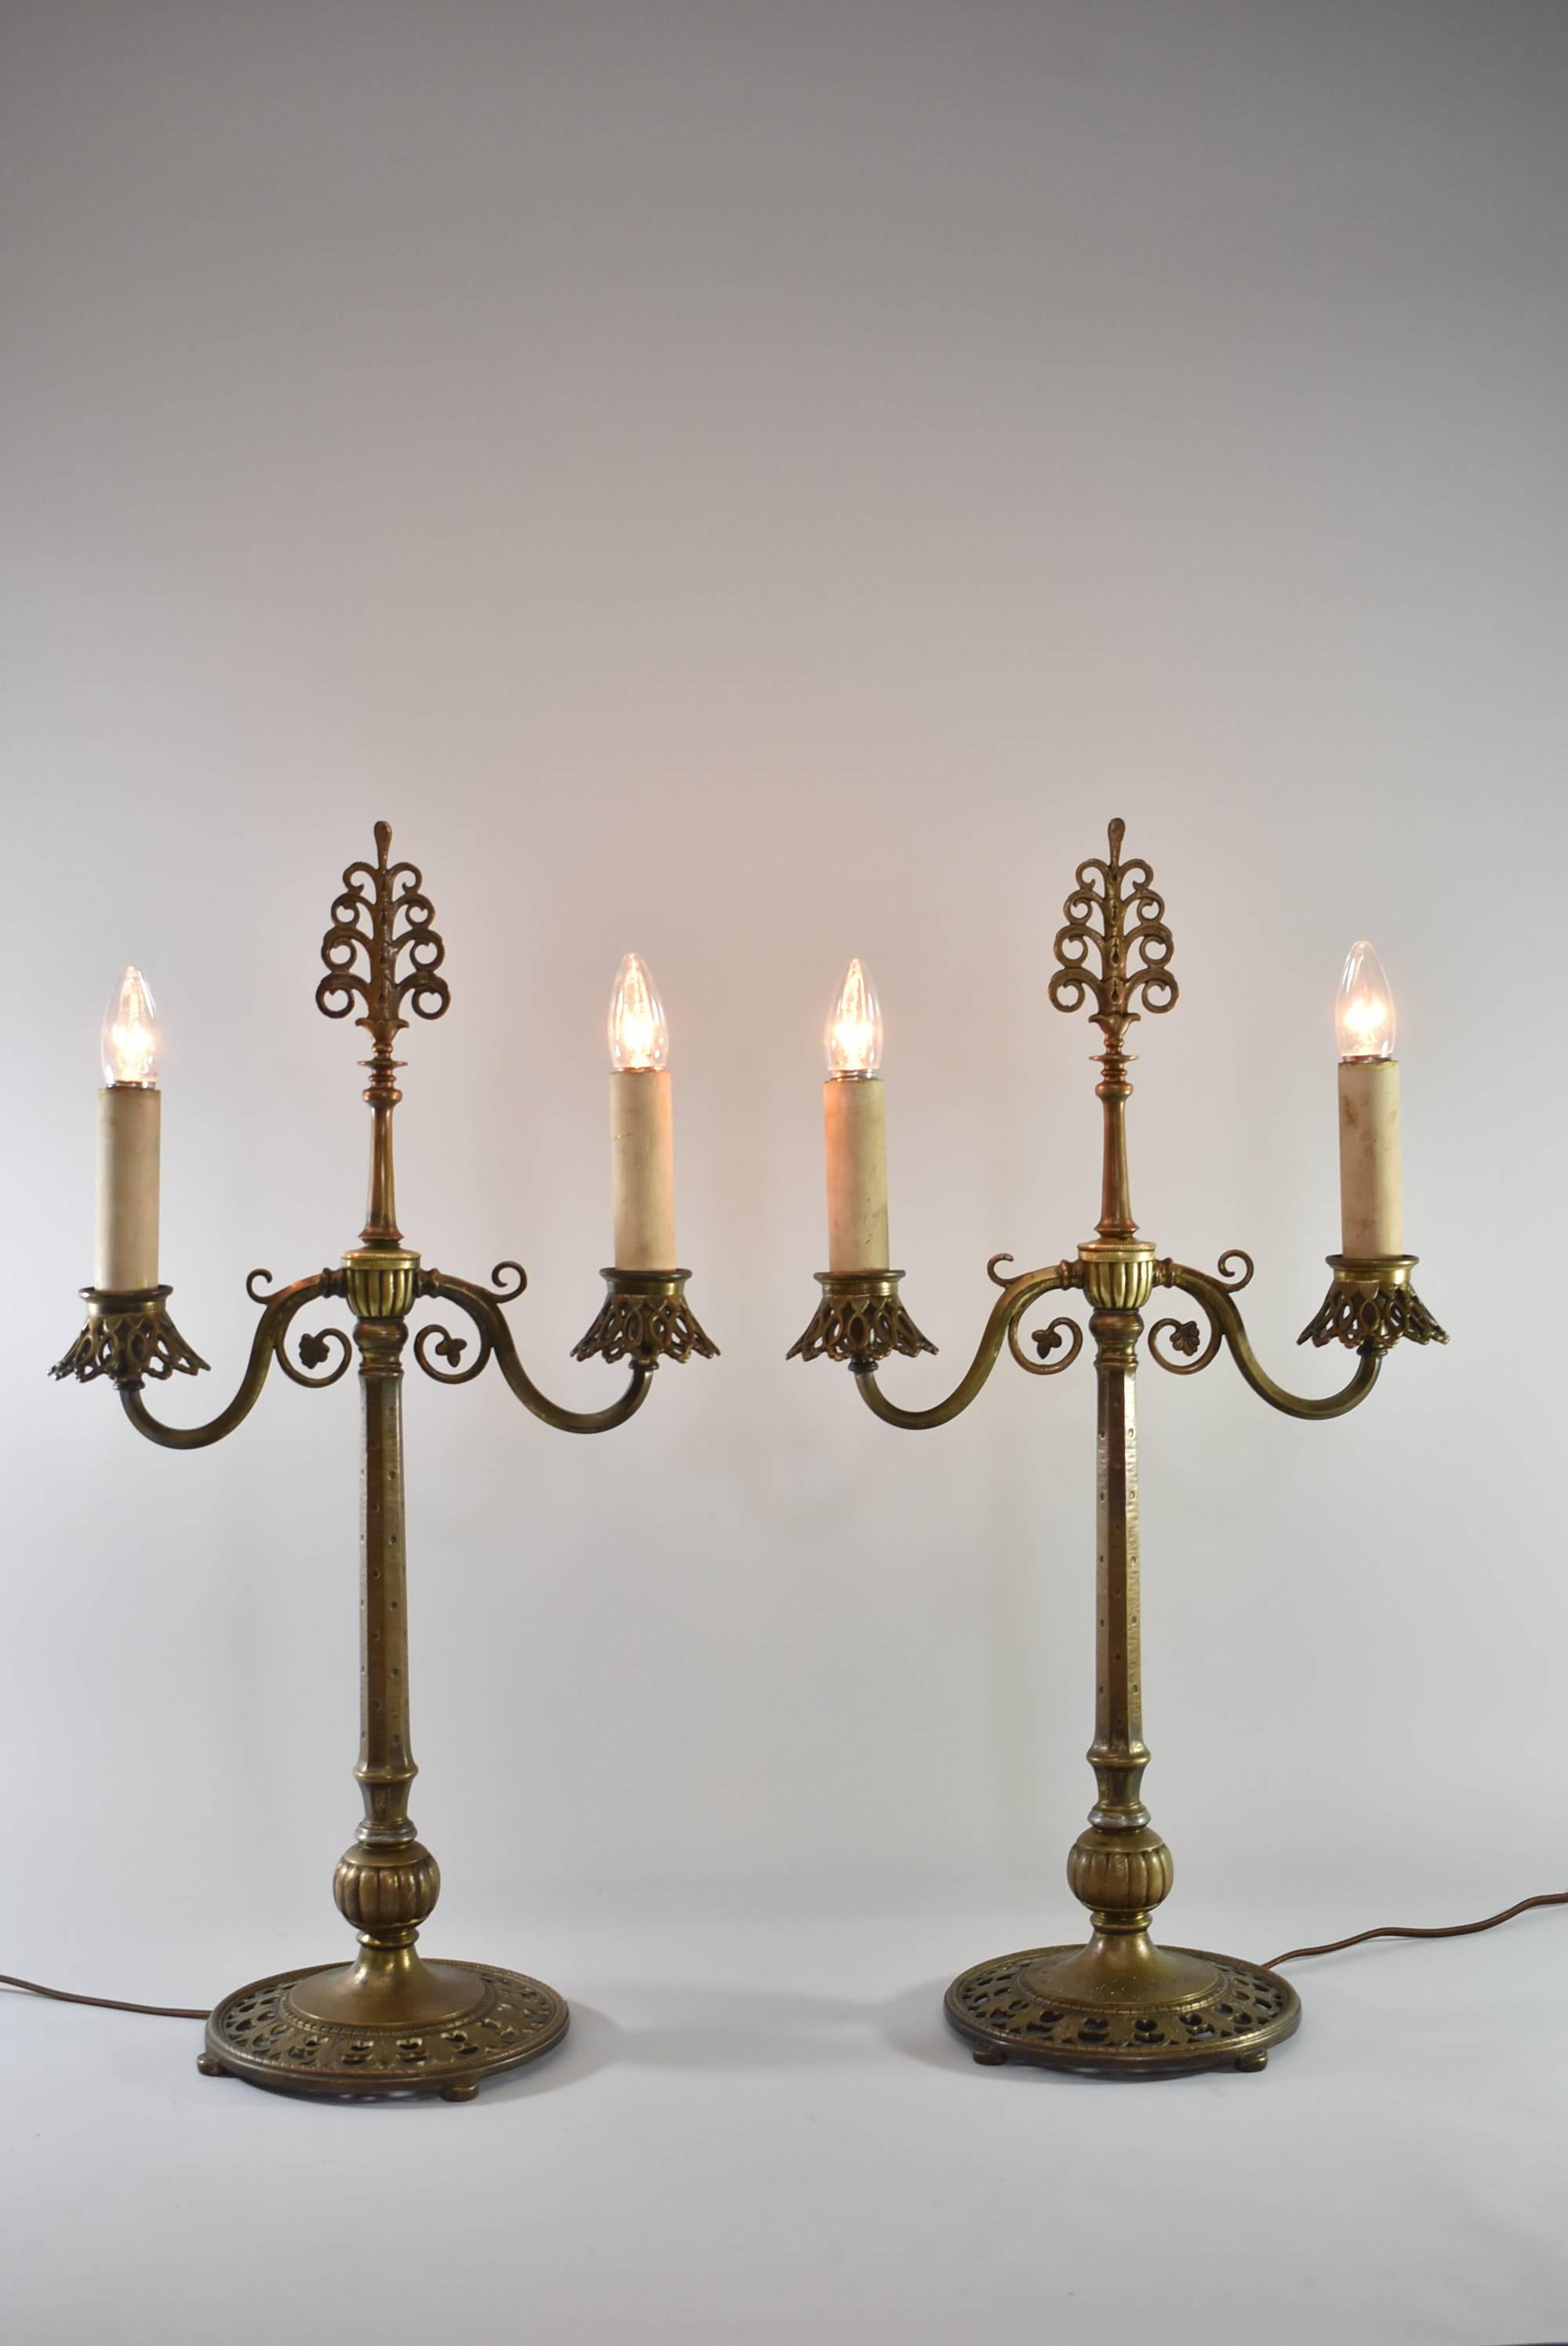 Ein fantastisches Paar Buffetlampen von Oscar Bach. Kandelaber mit je zwei elektrischen Kerzenfassungen und Glimmerschirmen, die im Lieferumfang enthalten sind. Sie haben die ursprünglichen bronzenen Kerzenabdeckungen, können aber gegen neuere